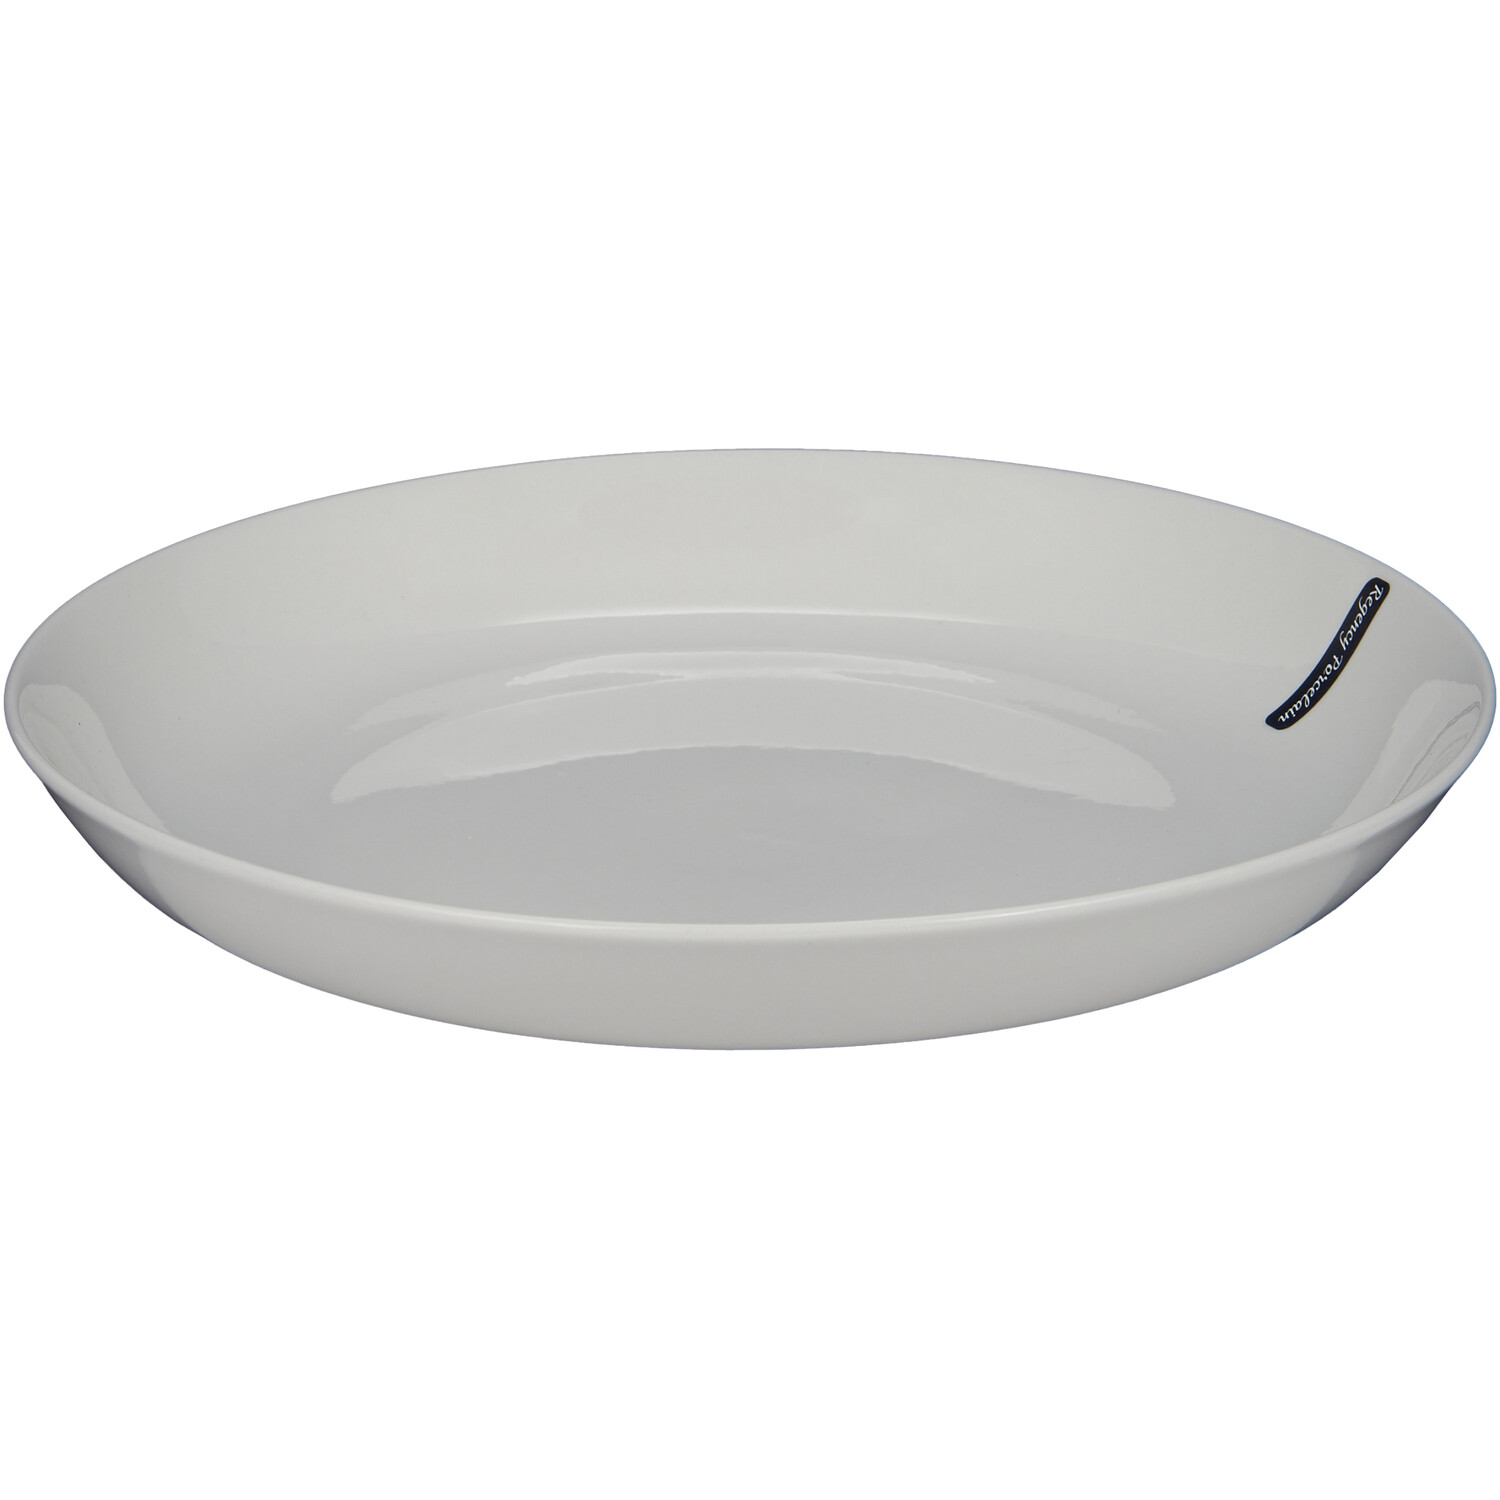 Regency Porcelain Serving Bowl - White Image 1